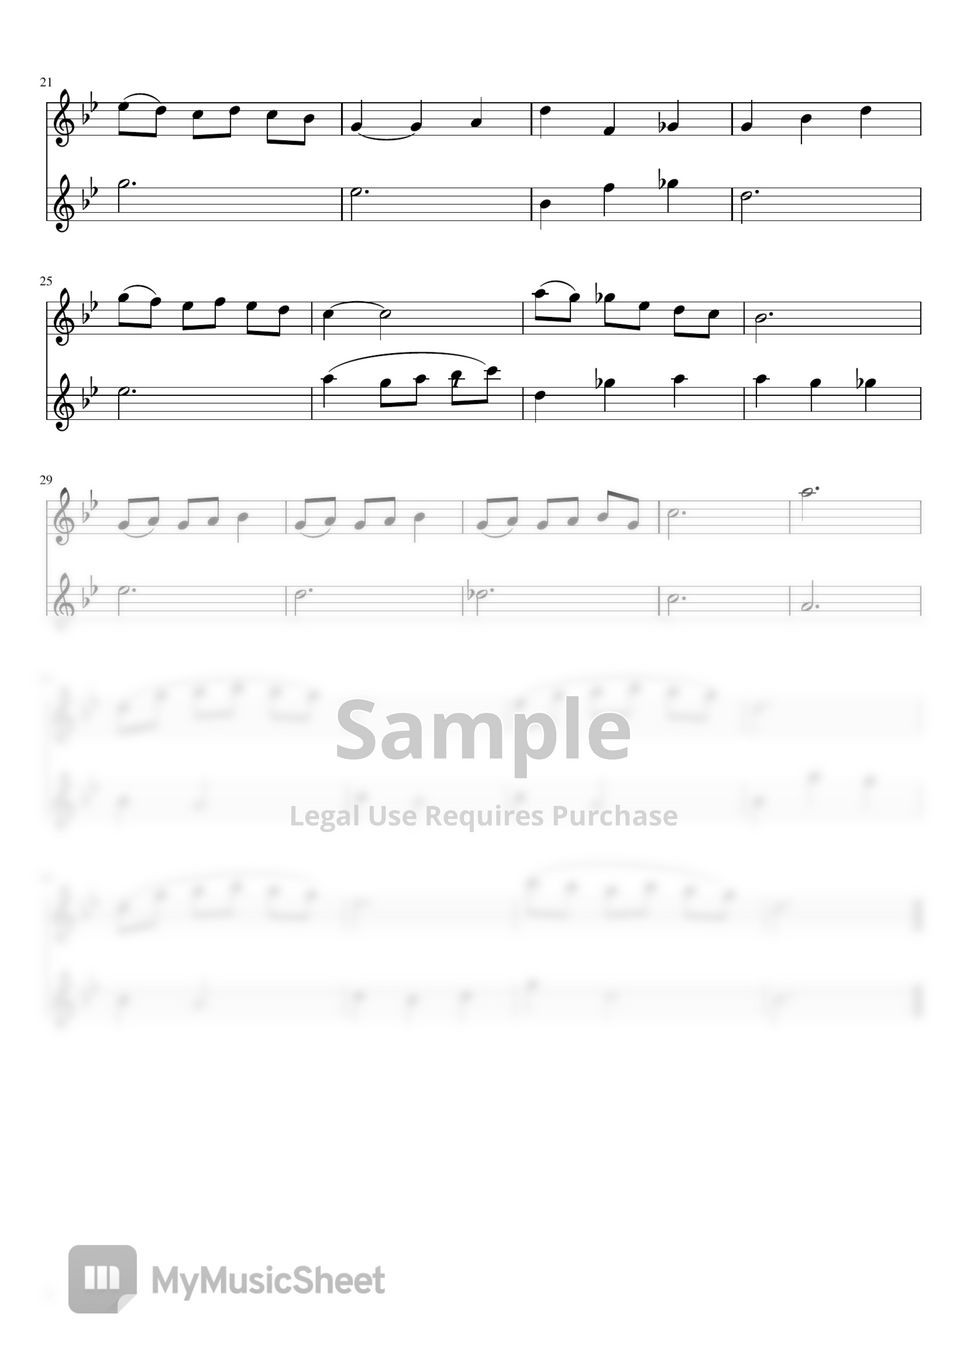 저스틴 허위즈 - Mia & sebastian's theme (Two flutes/반주MR) by 심플플루트